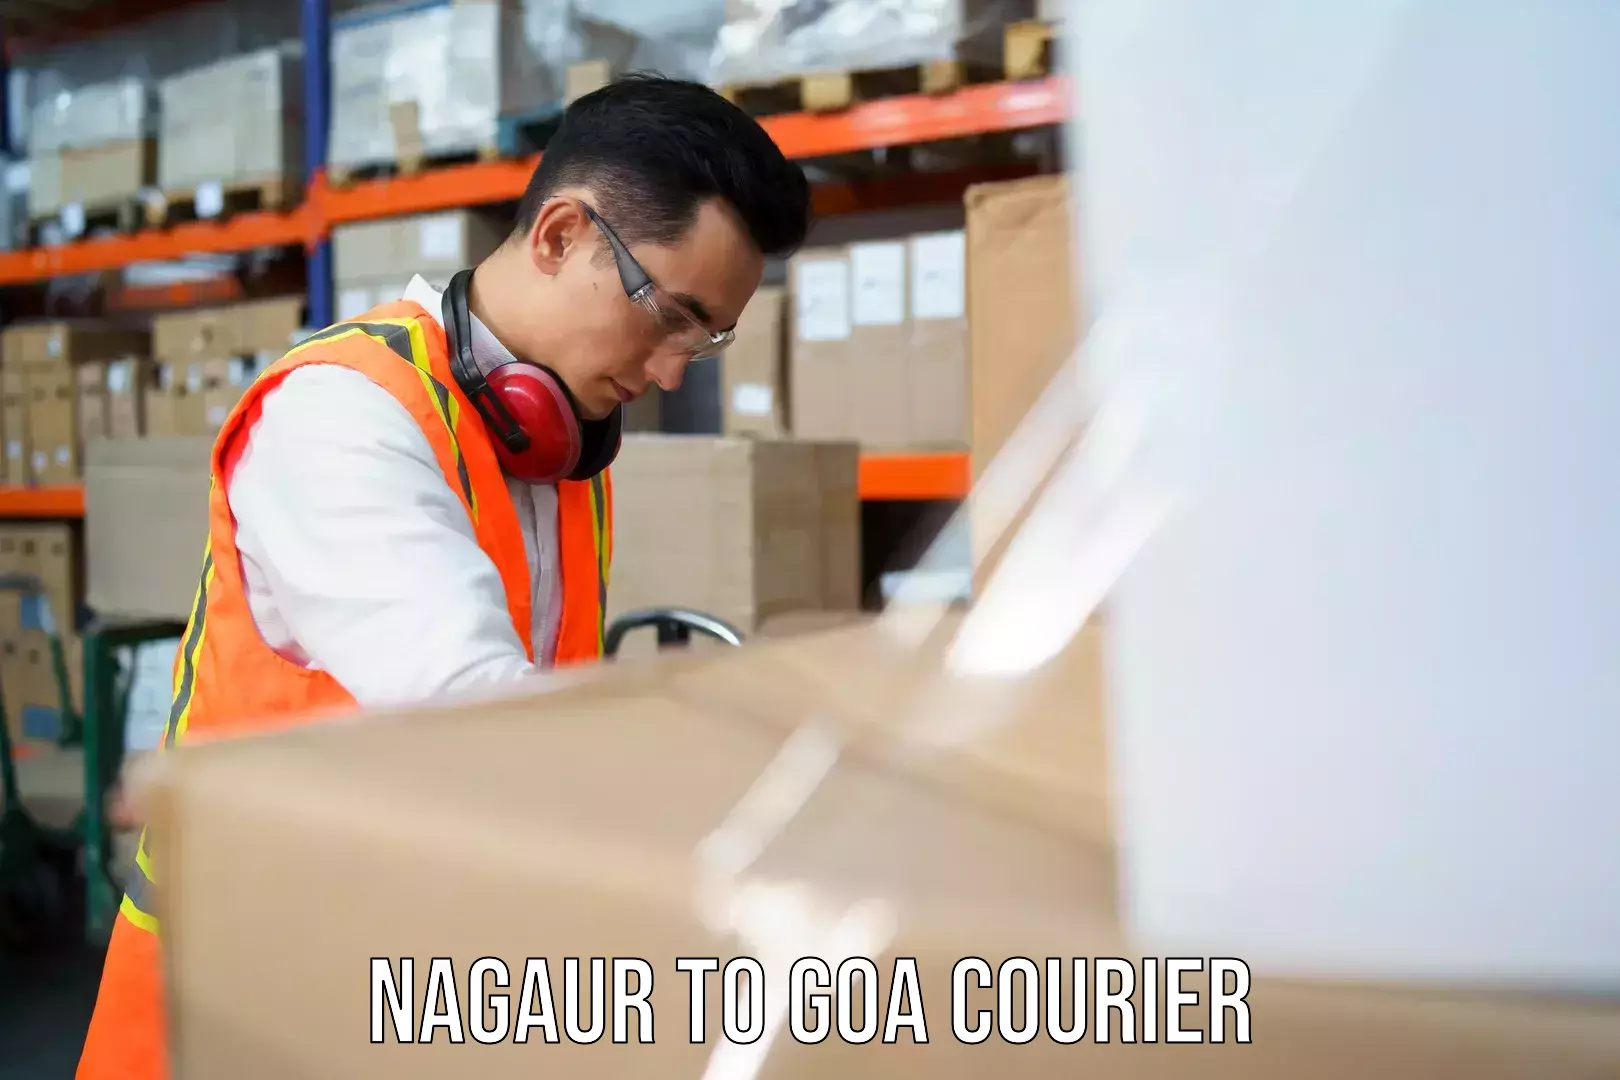 Premium delivery services Nagaur to Panaji